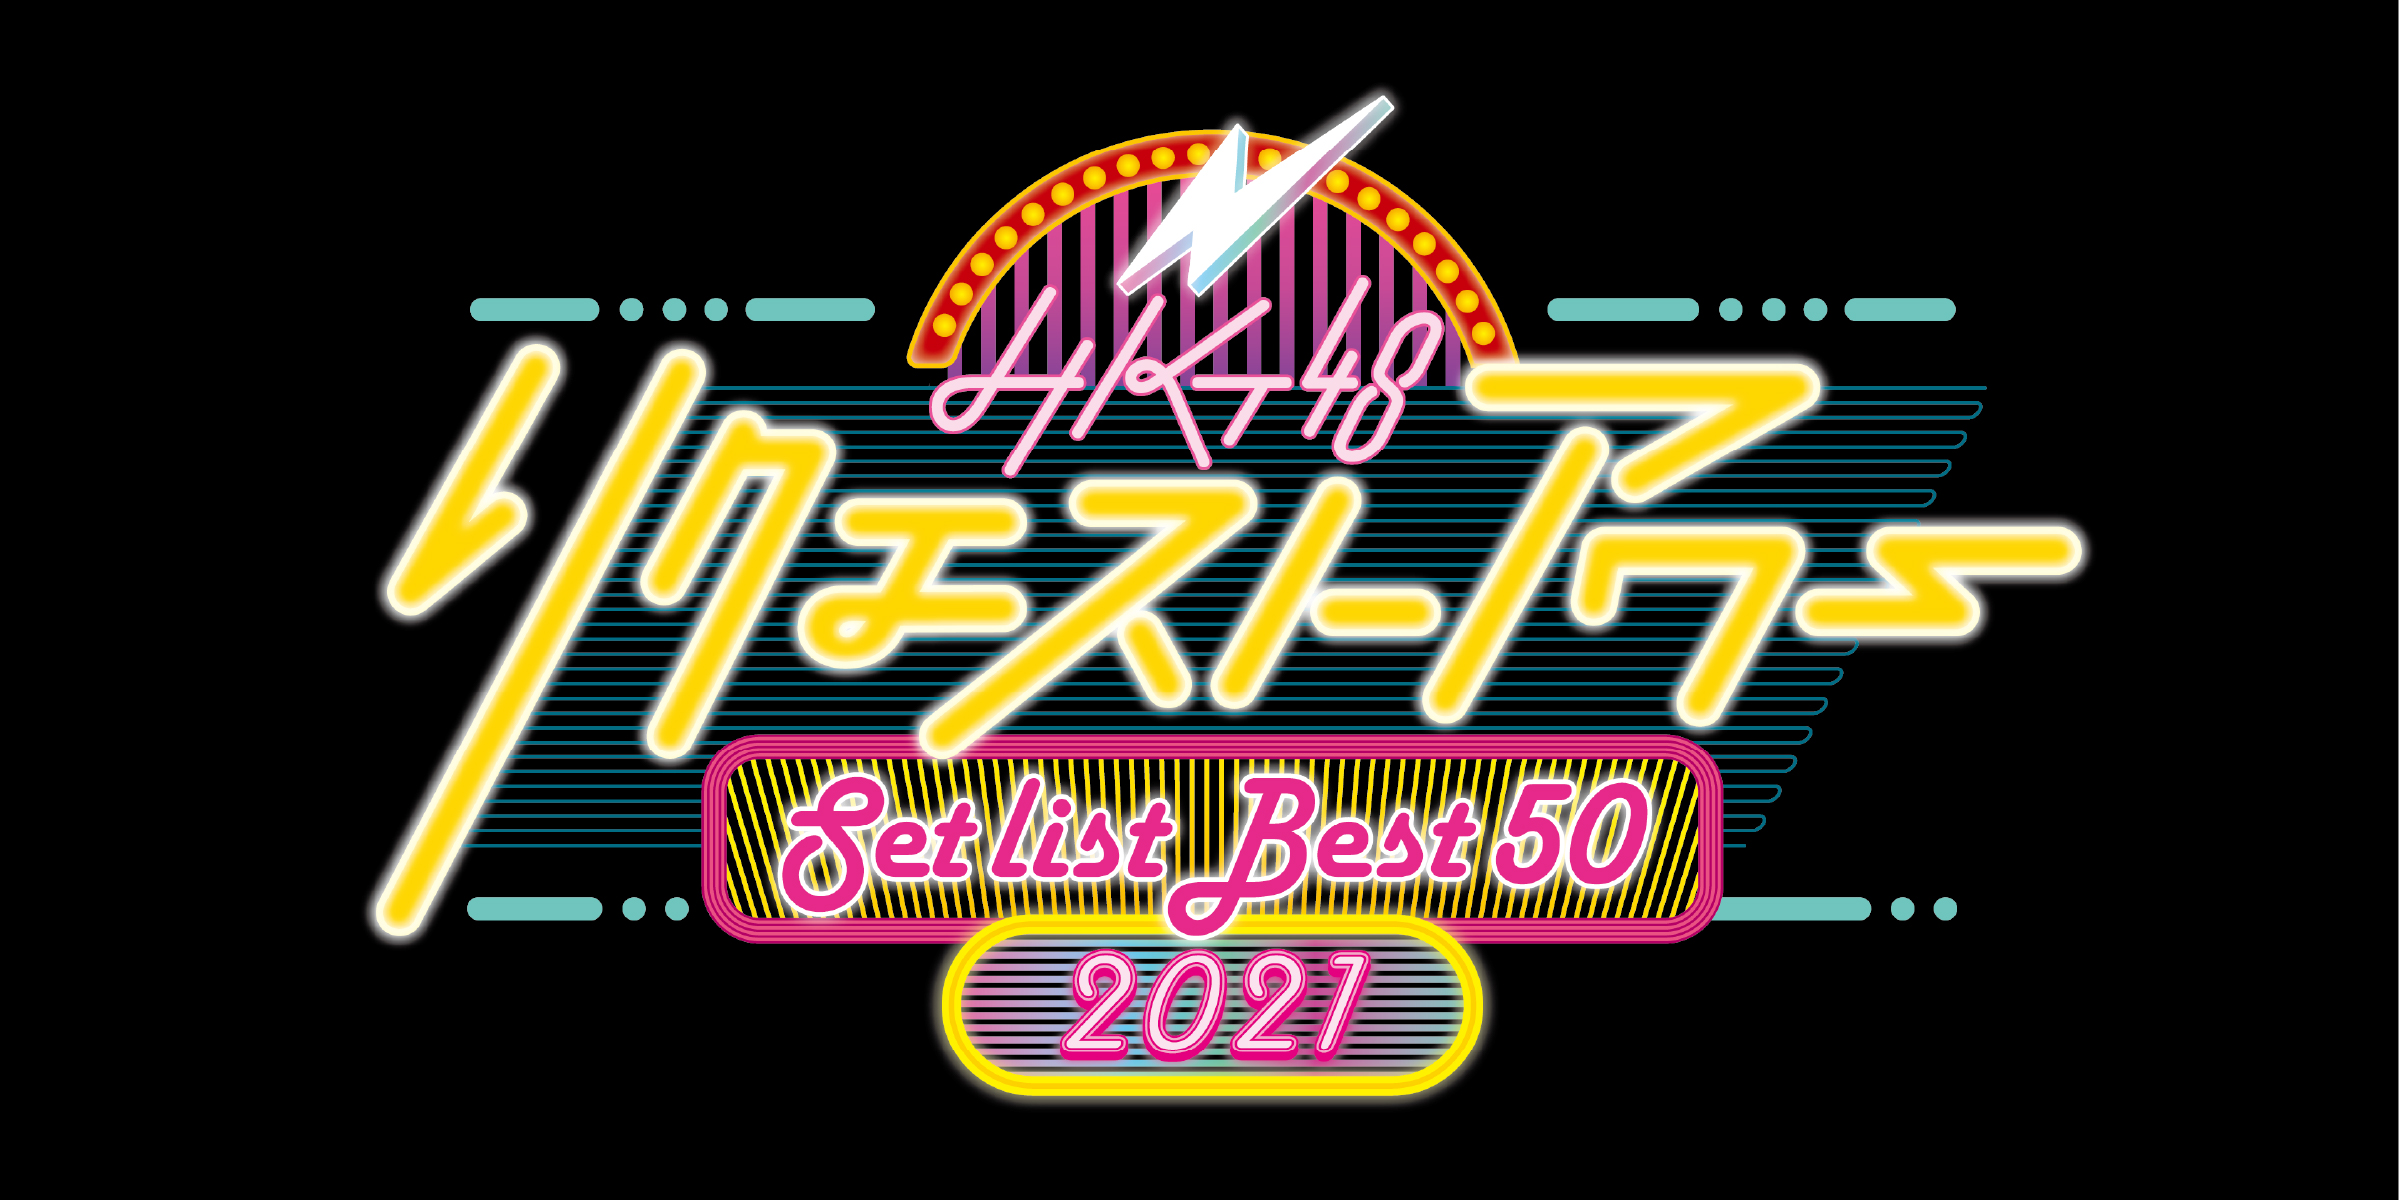 「HKT48 リクエストアワー セットリストベスト50 2021」チケット先行予約販売スケジュールのご案内